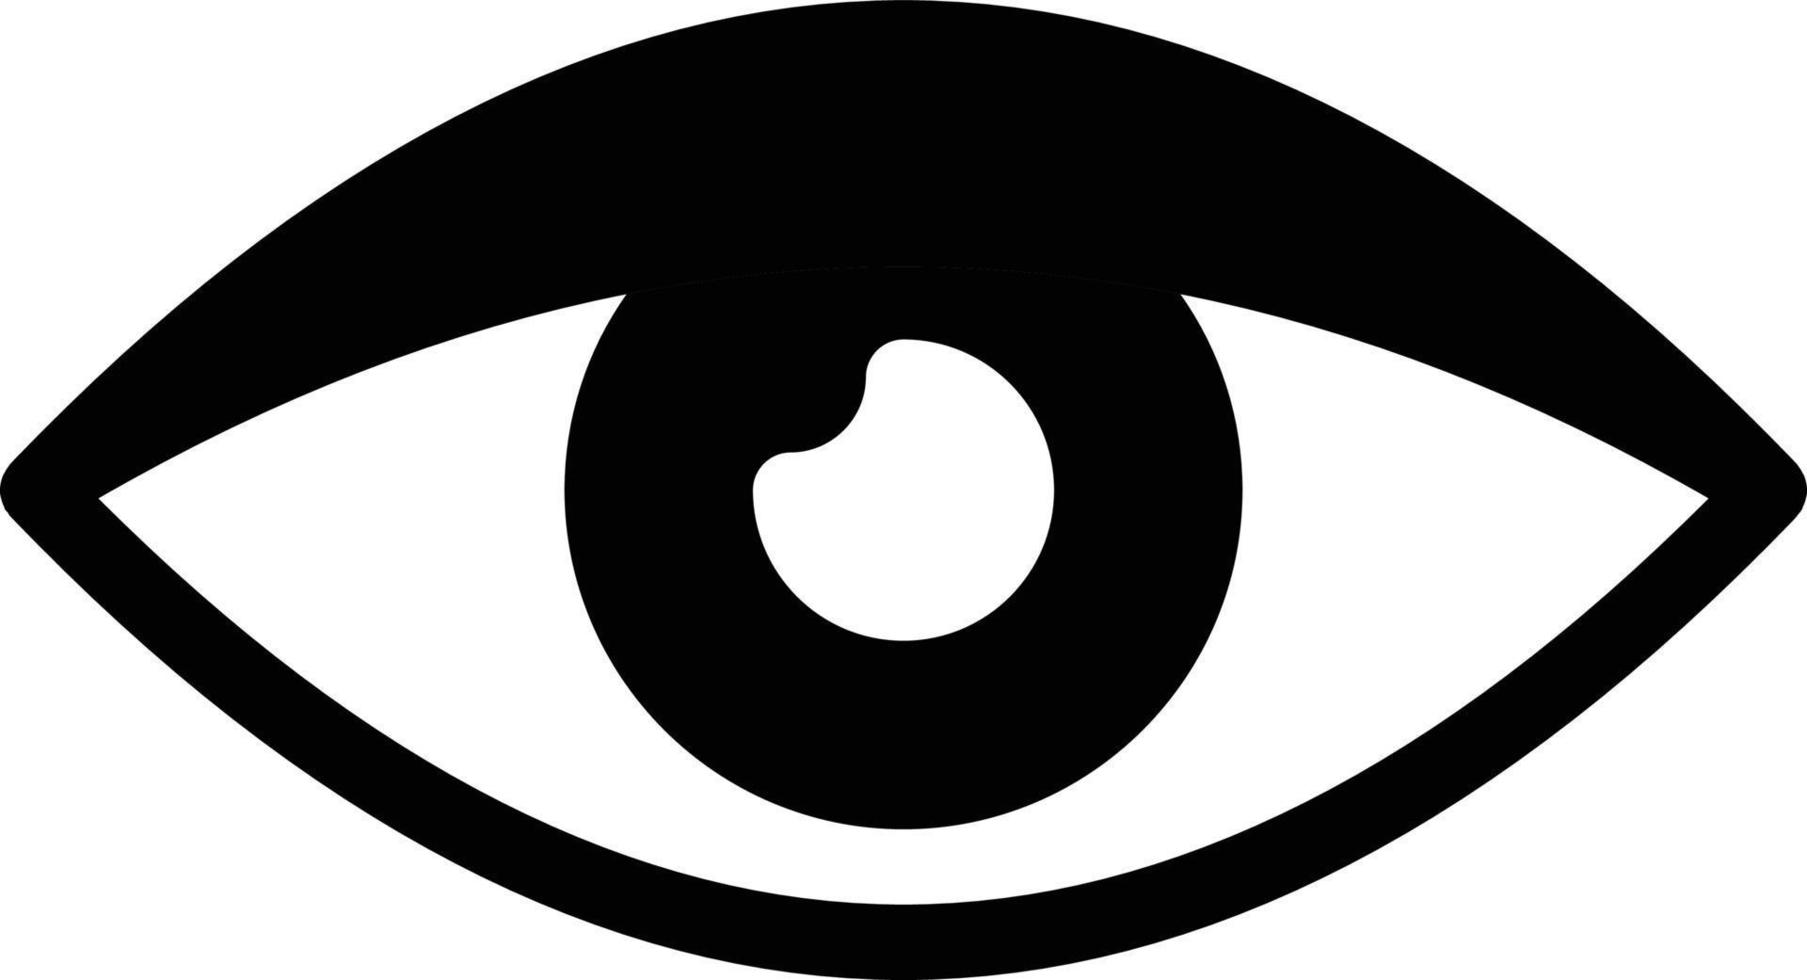 illustrazione vettoriale dell'occhio su uno sfondo. simboli di qualità premium. icone vettoriali per il concetto e la progettazione grafica.